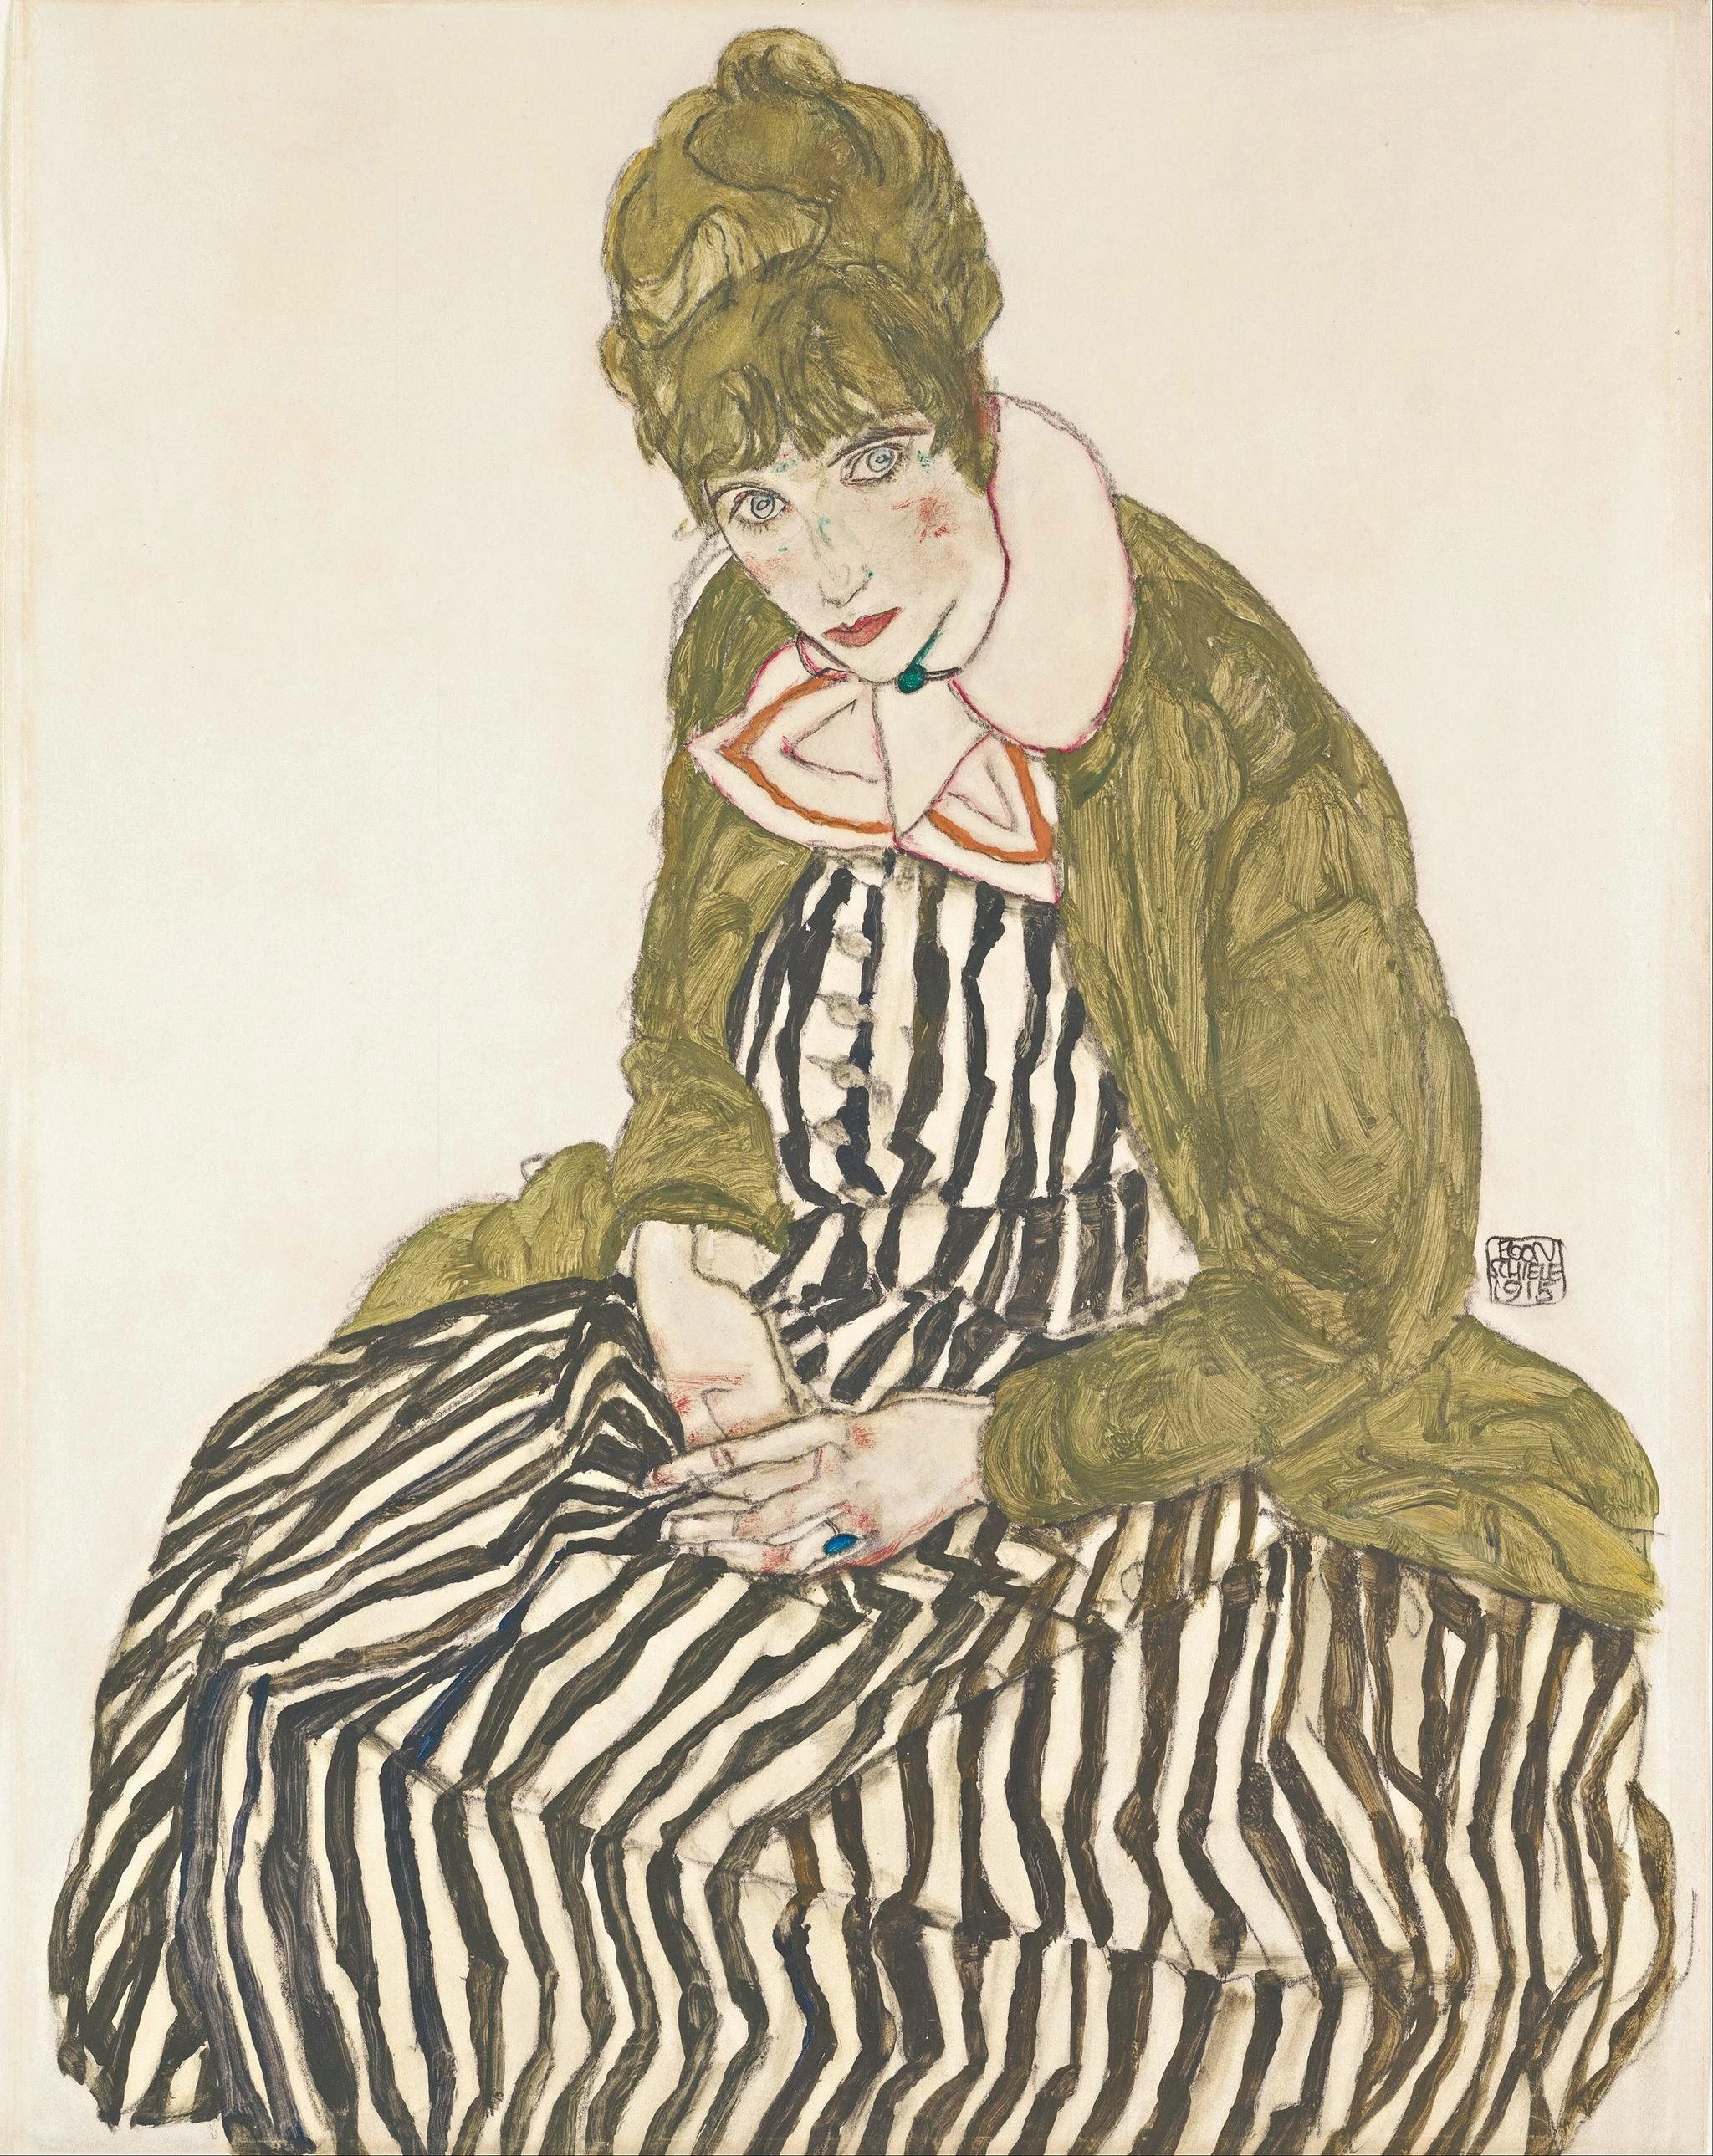 Portrait of Edith Schiele with Striped Dress, Sitting, Egon Schiele